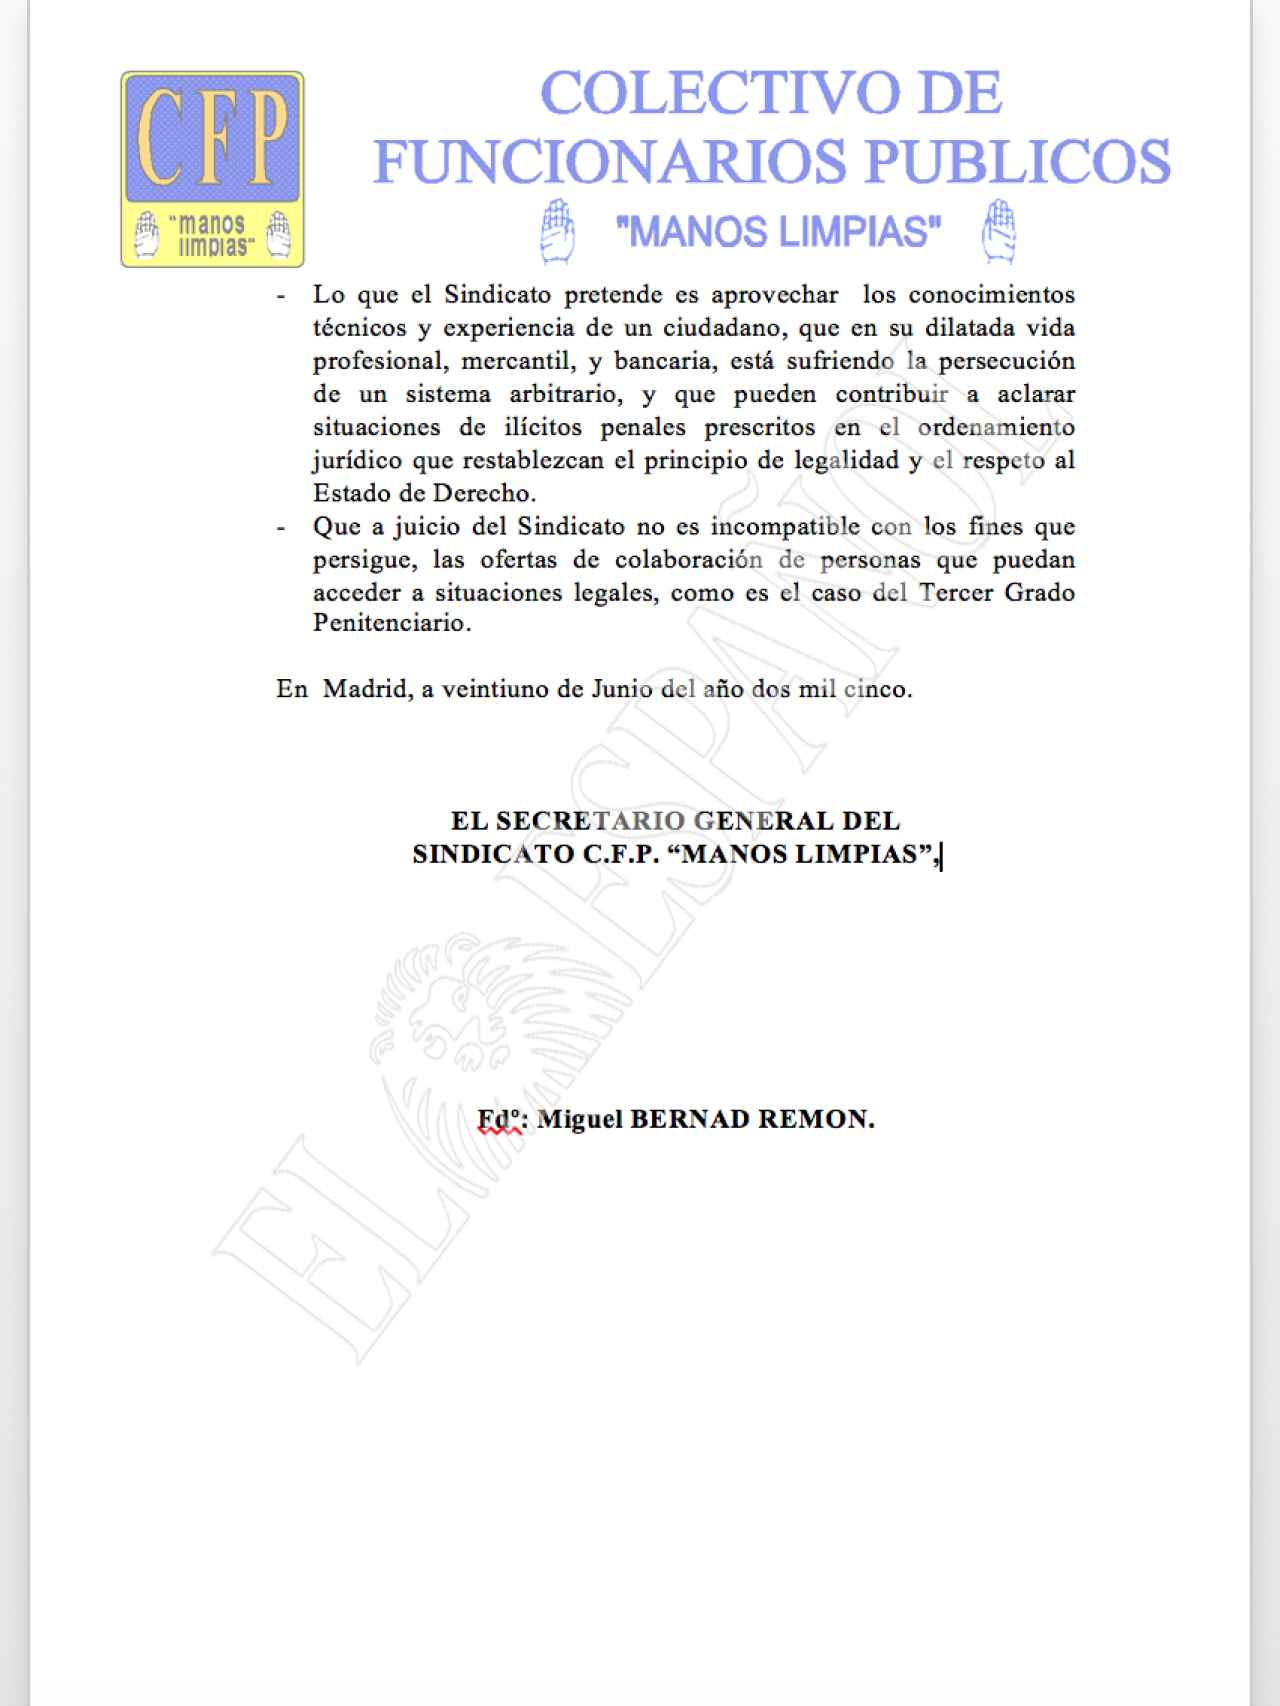 Escrito firmado por Miguel Bernad con una oferta a Mario Conde